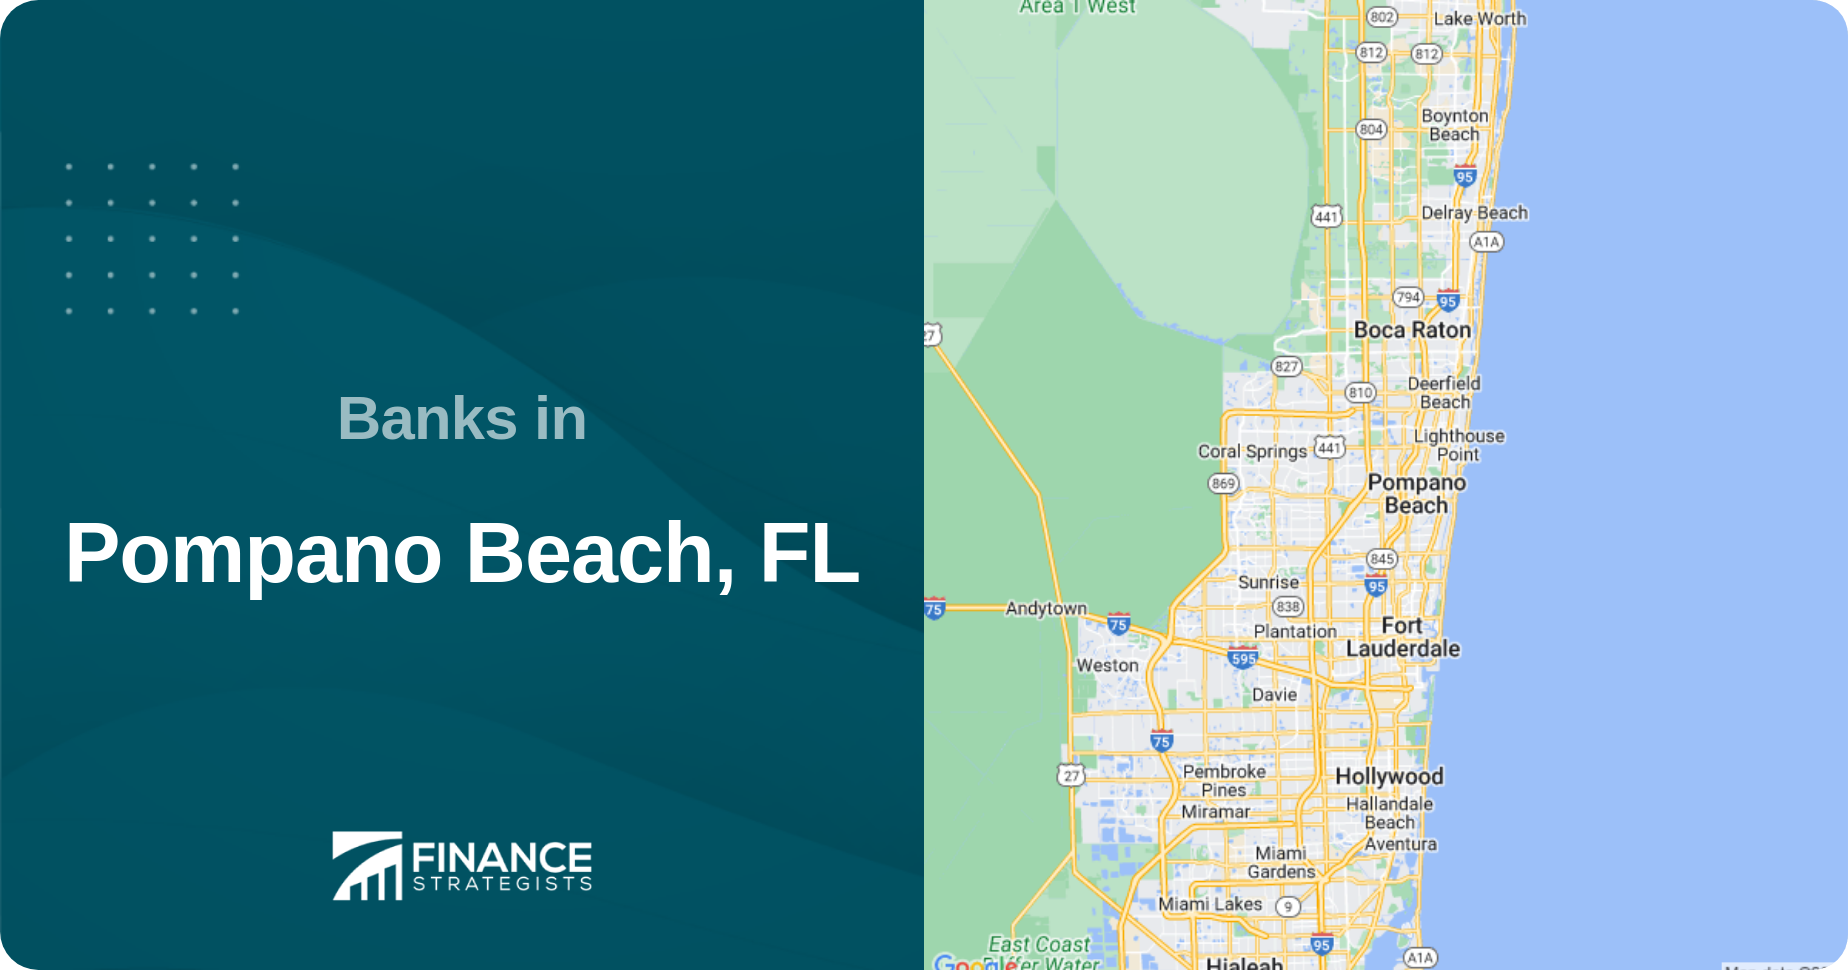 Banks in Pompano Beach, FL